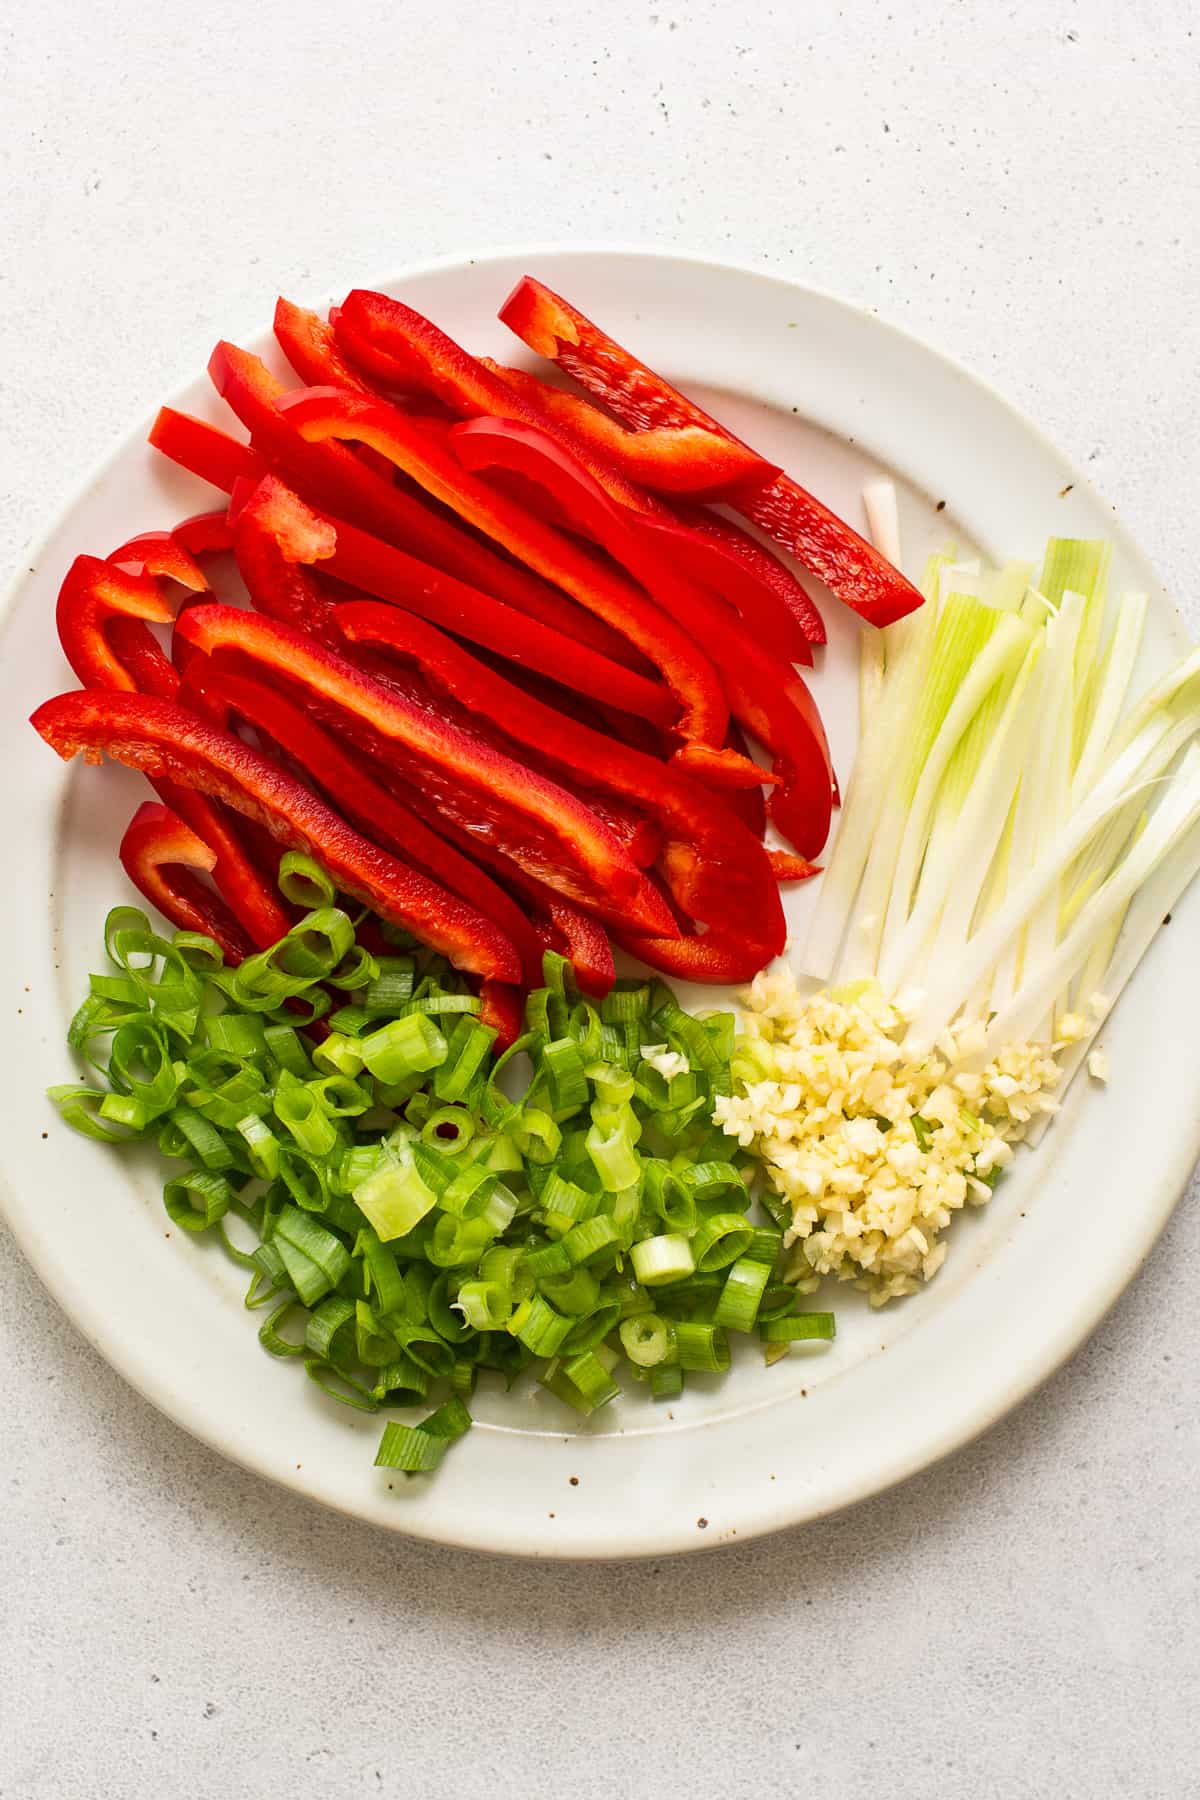 sliced veggies on platter.